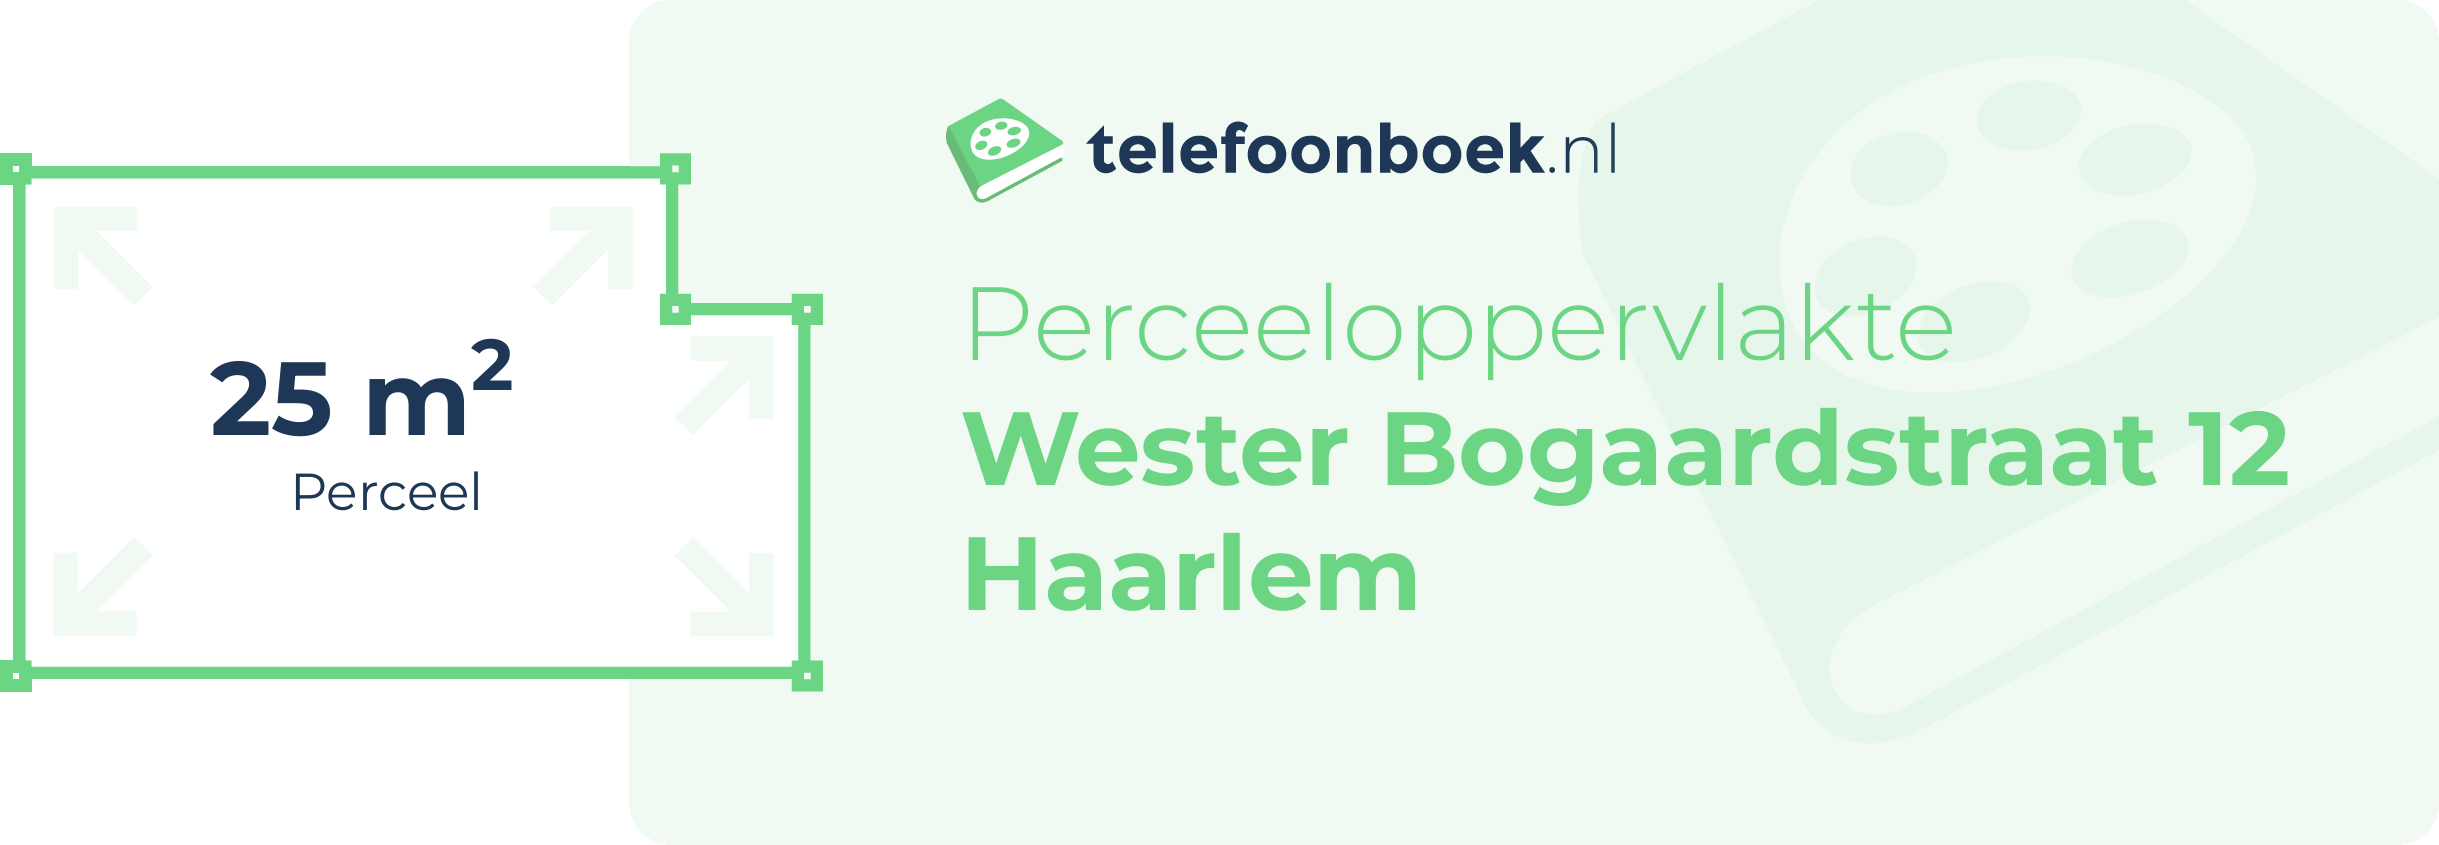 Perceeloppervlakte Wester Bogaardstraat 12 Haarlem